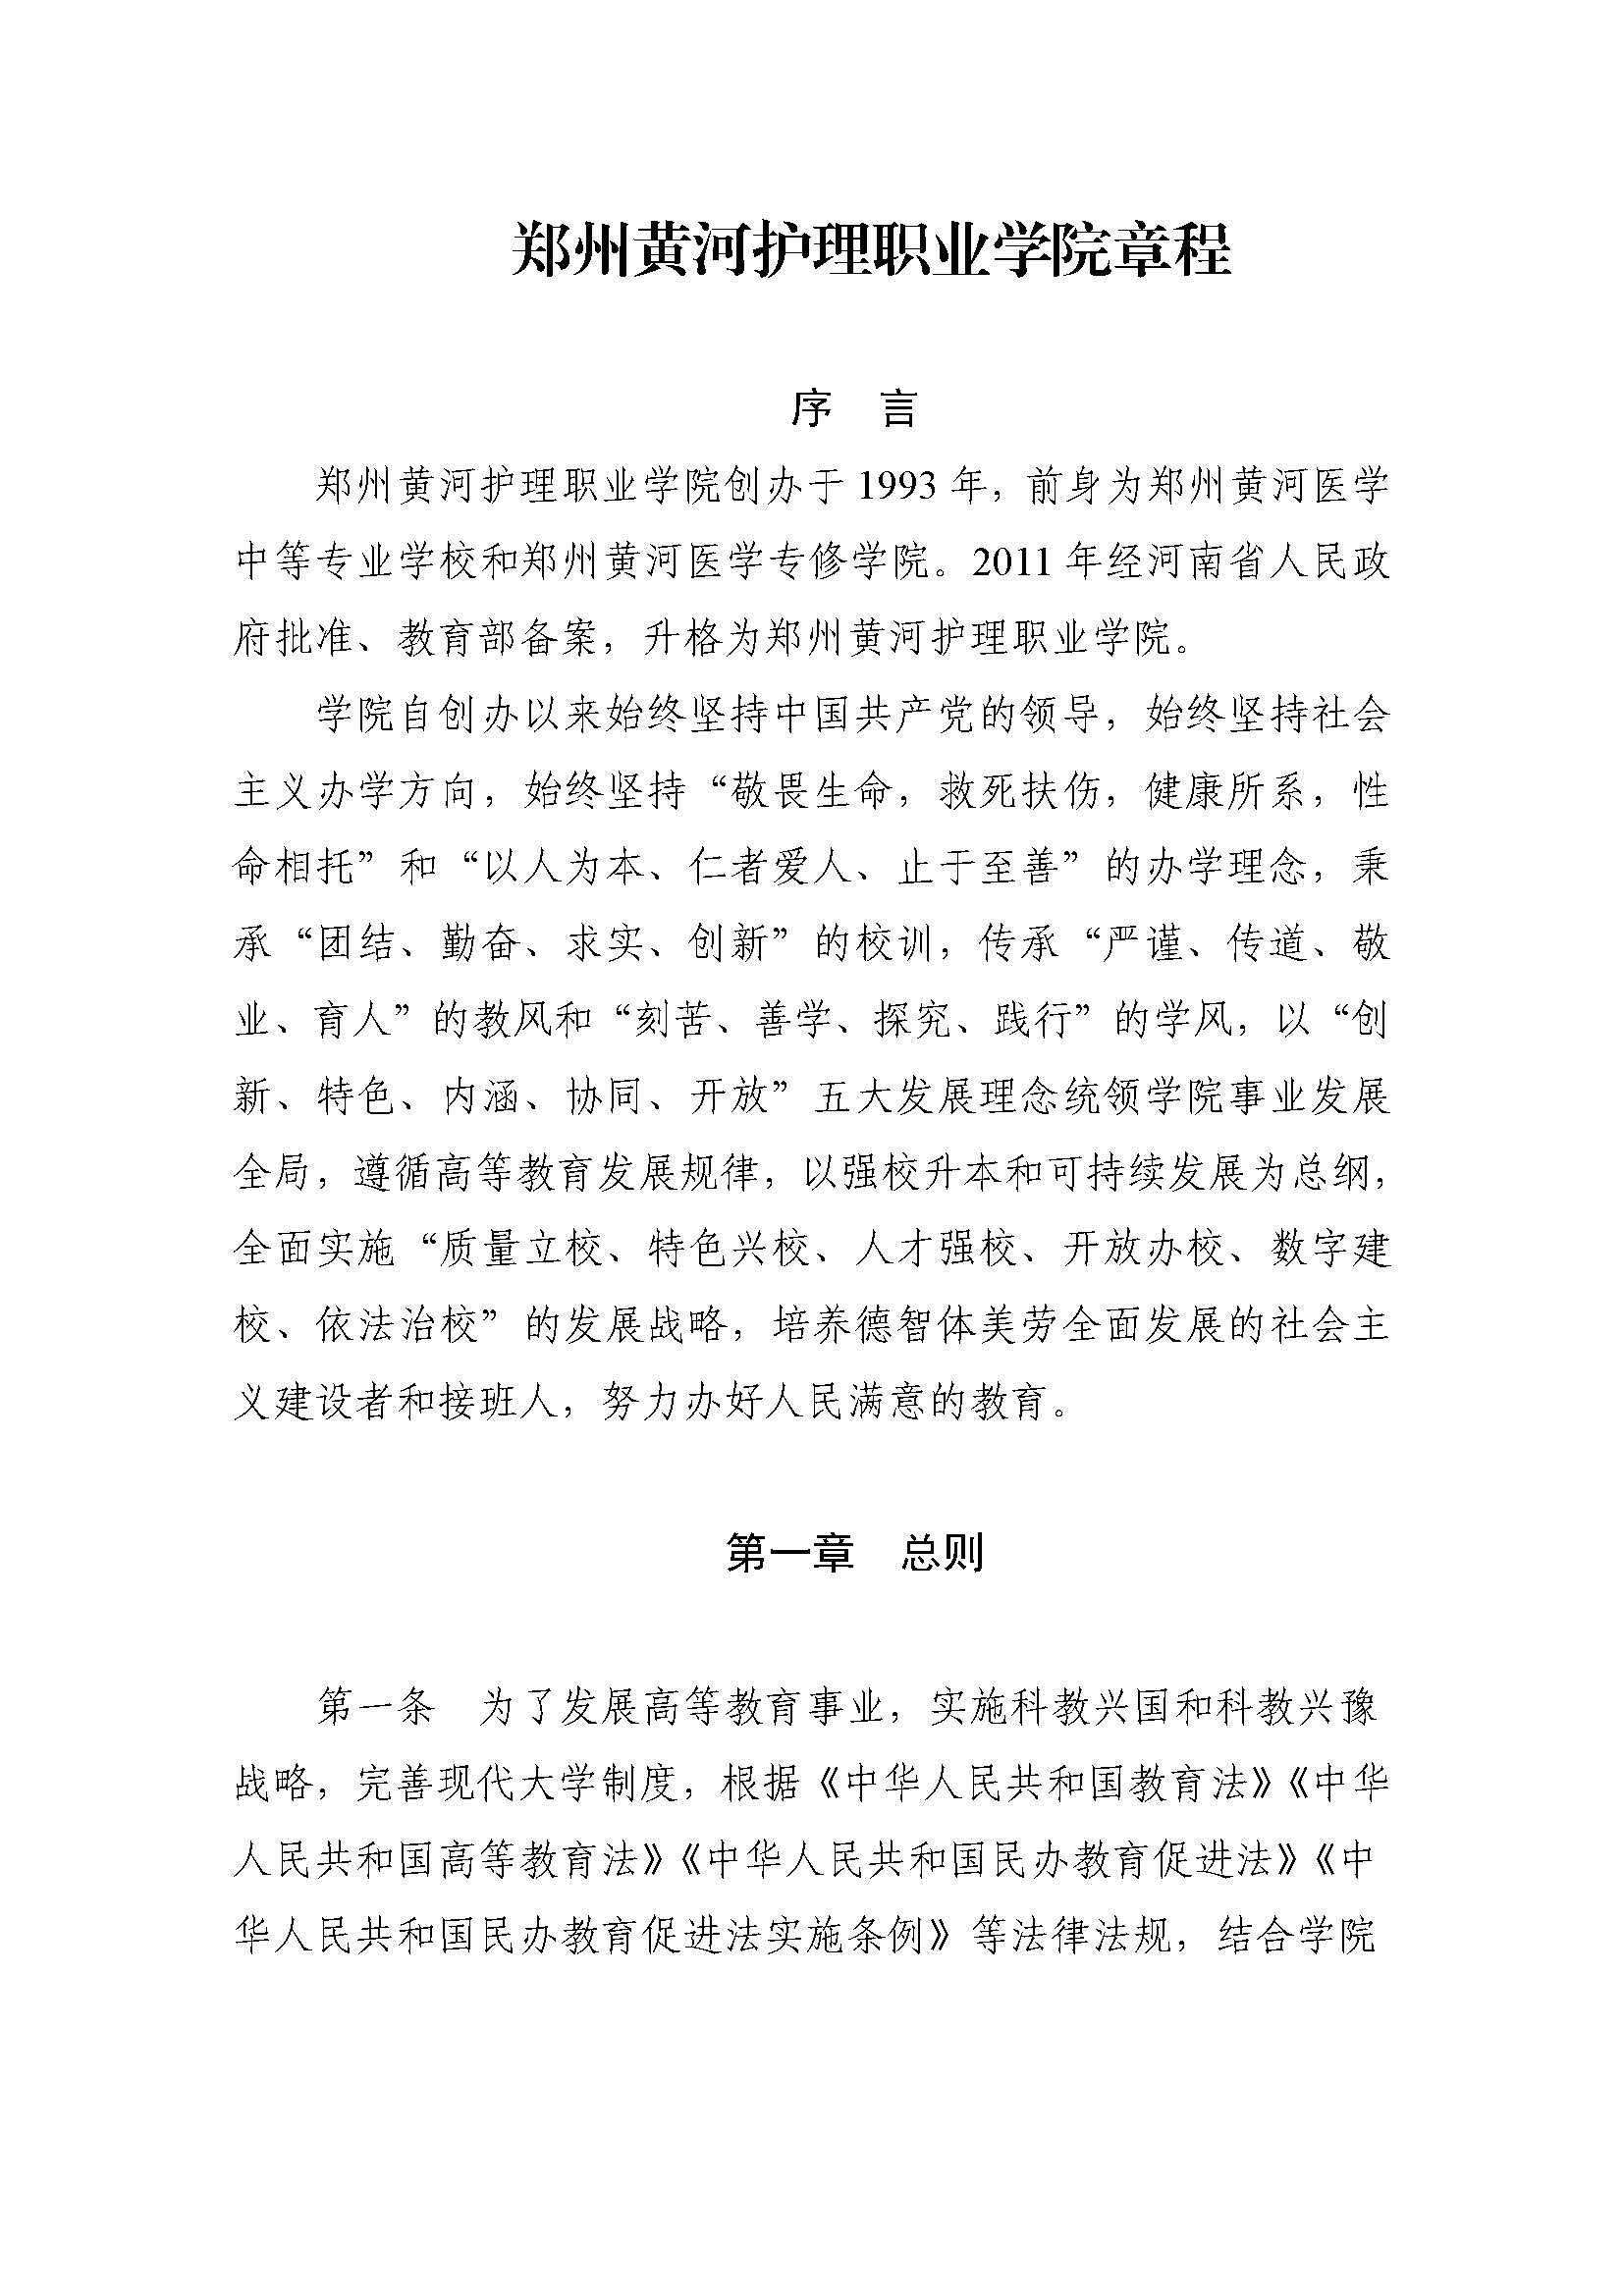 郑州黄河护理职业学院章程_页面_01.jpg